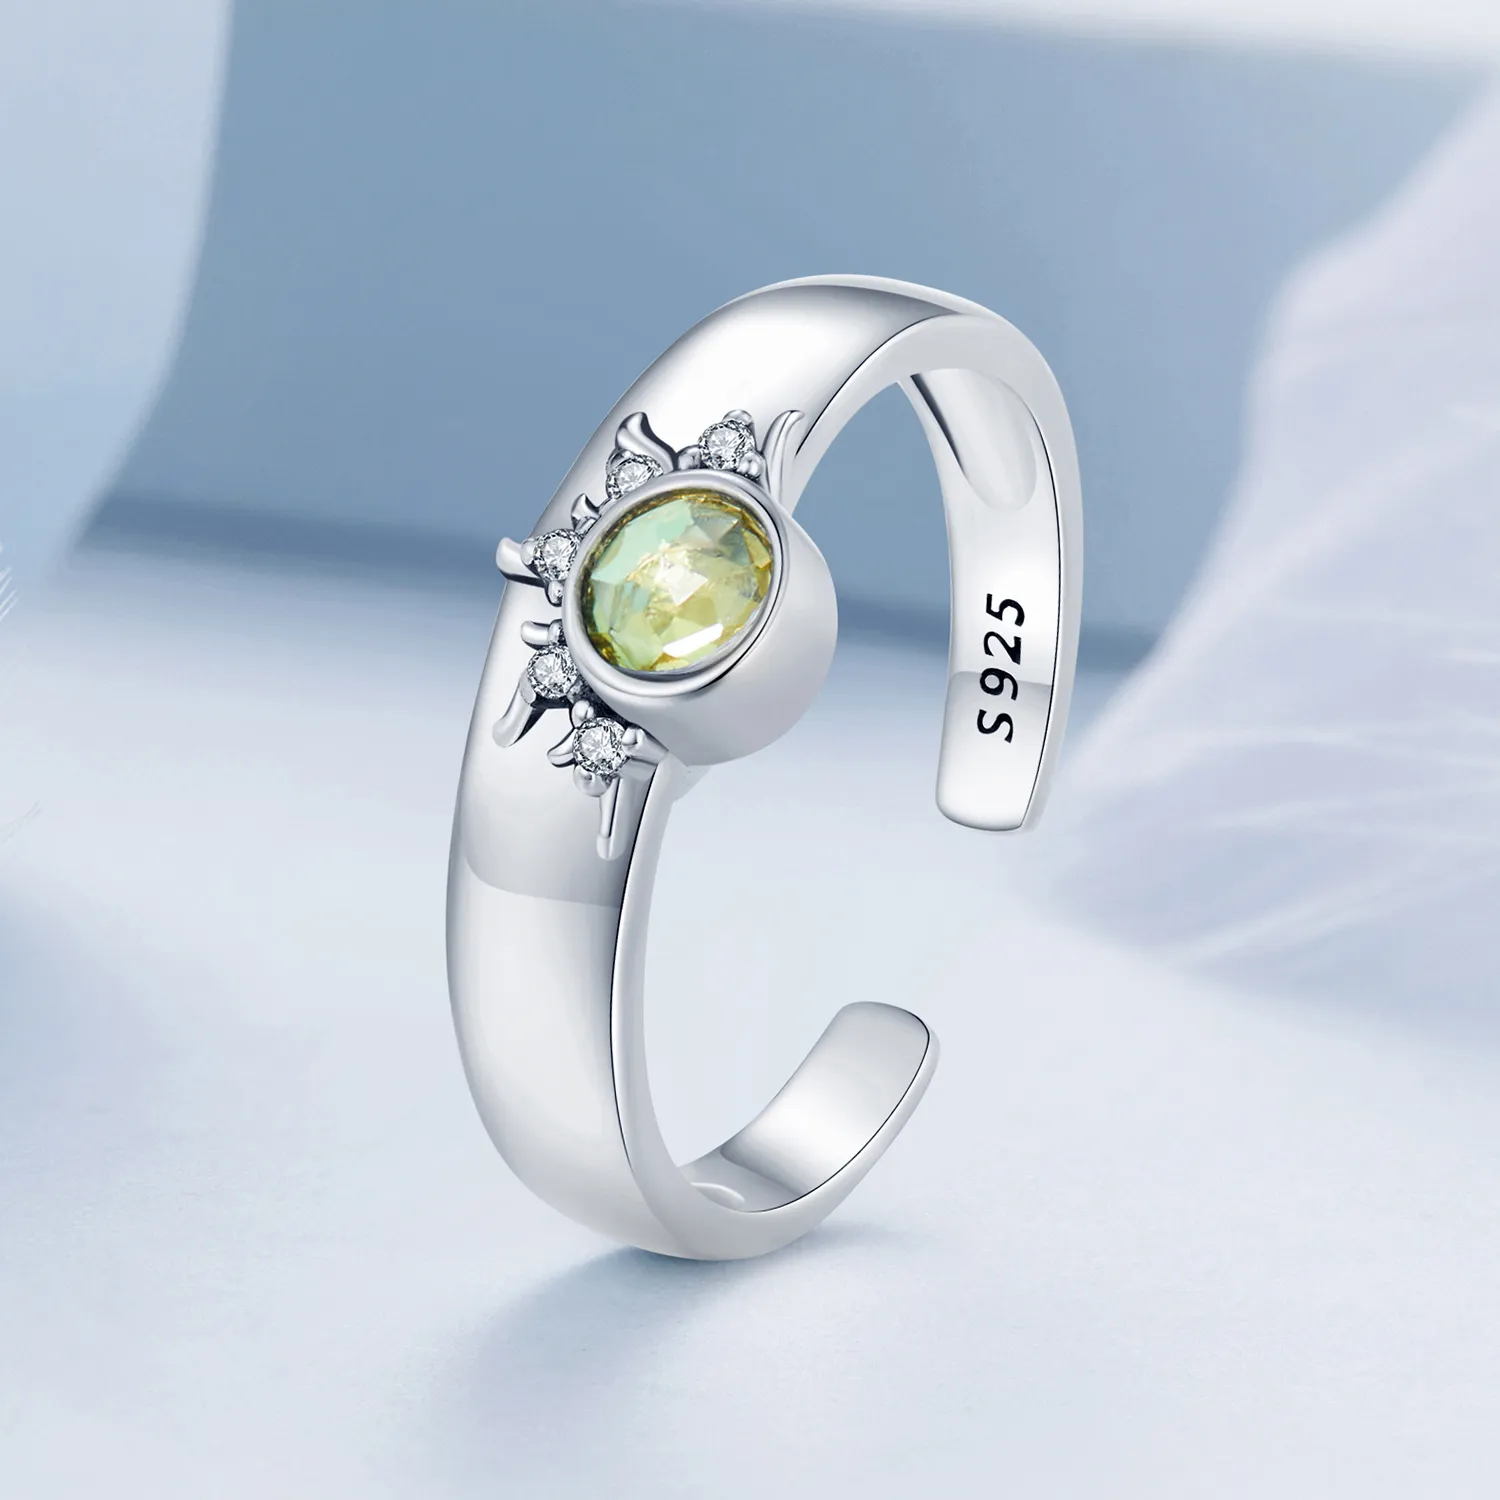 Inel cuplu în stil Pandora cu soare, lună și stele - BSR491-E